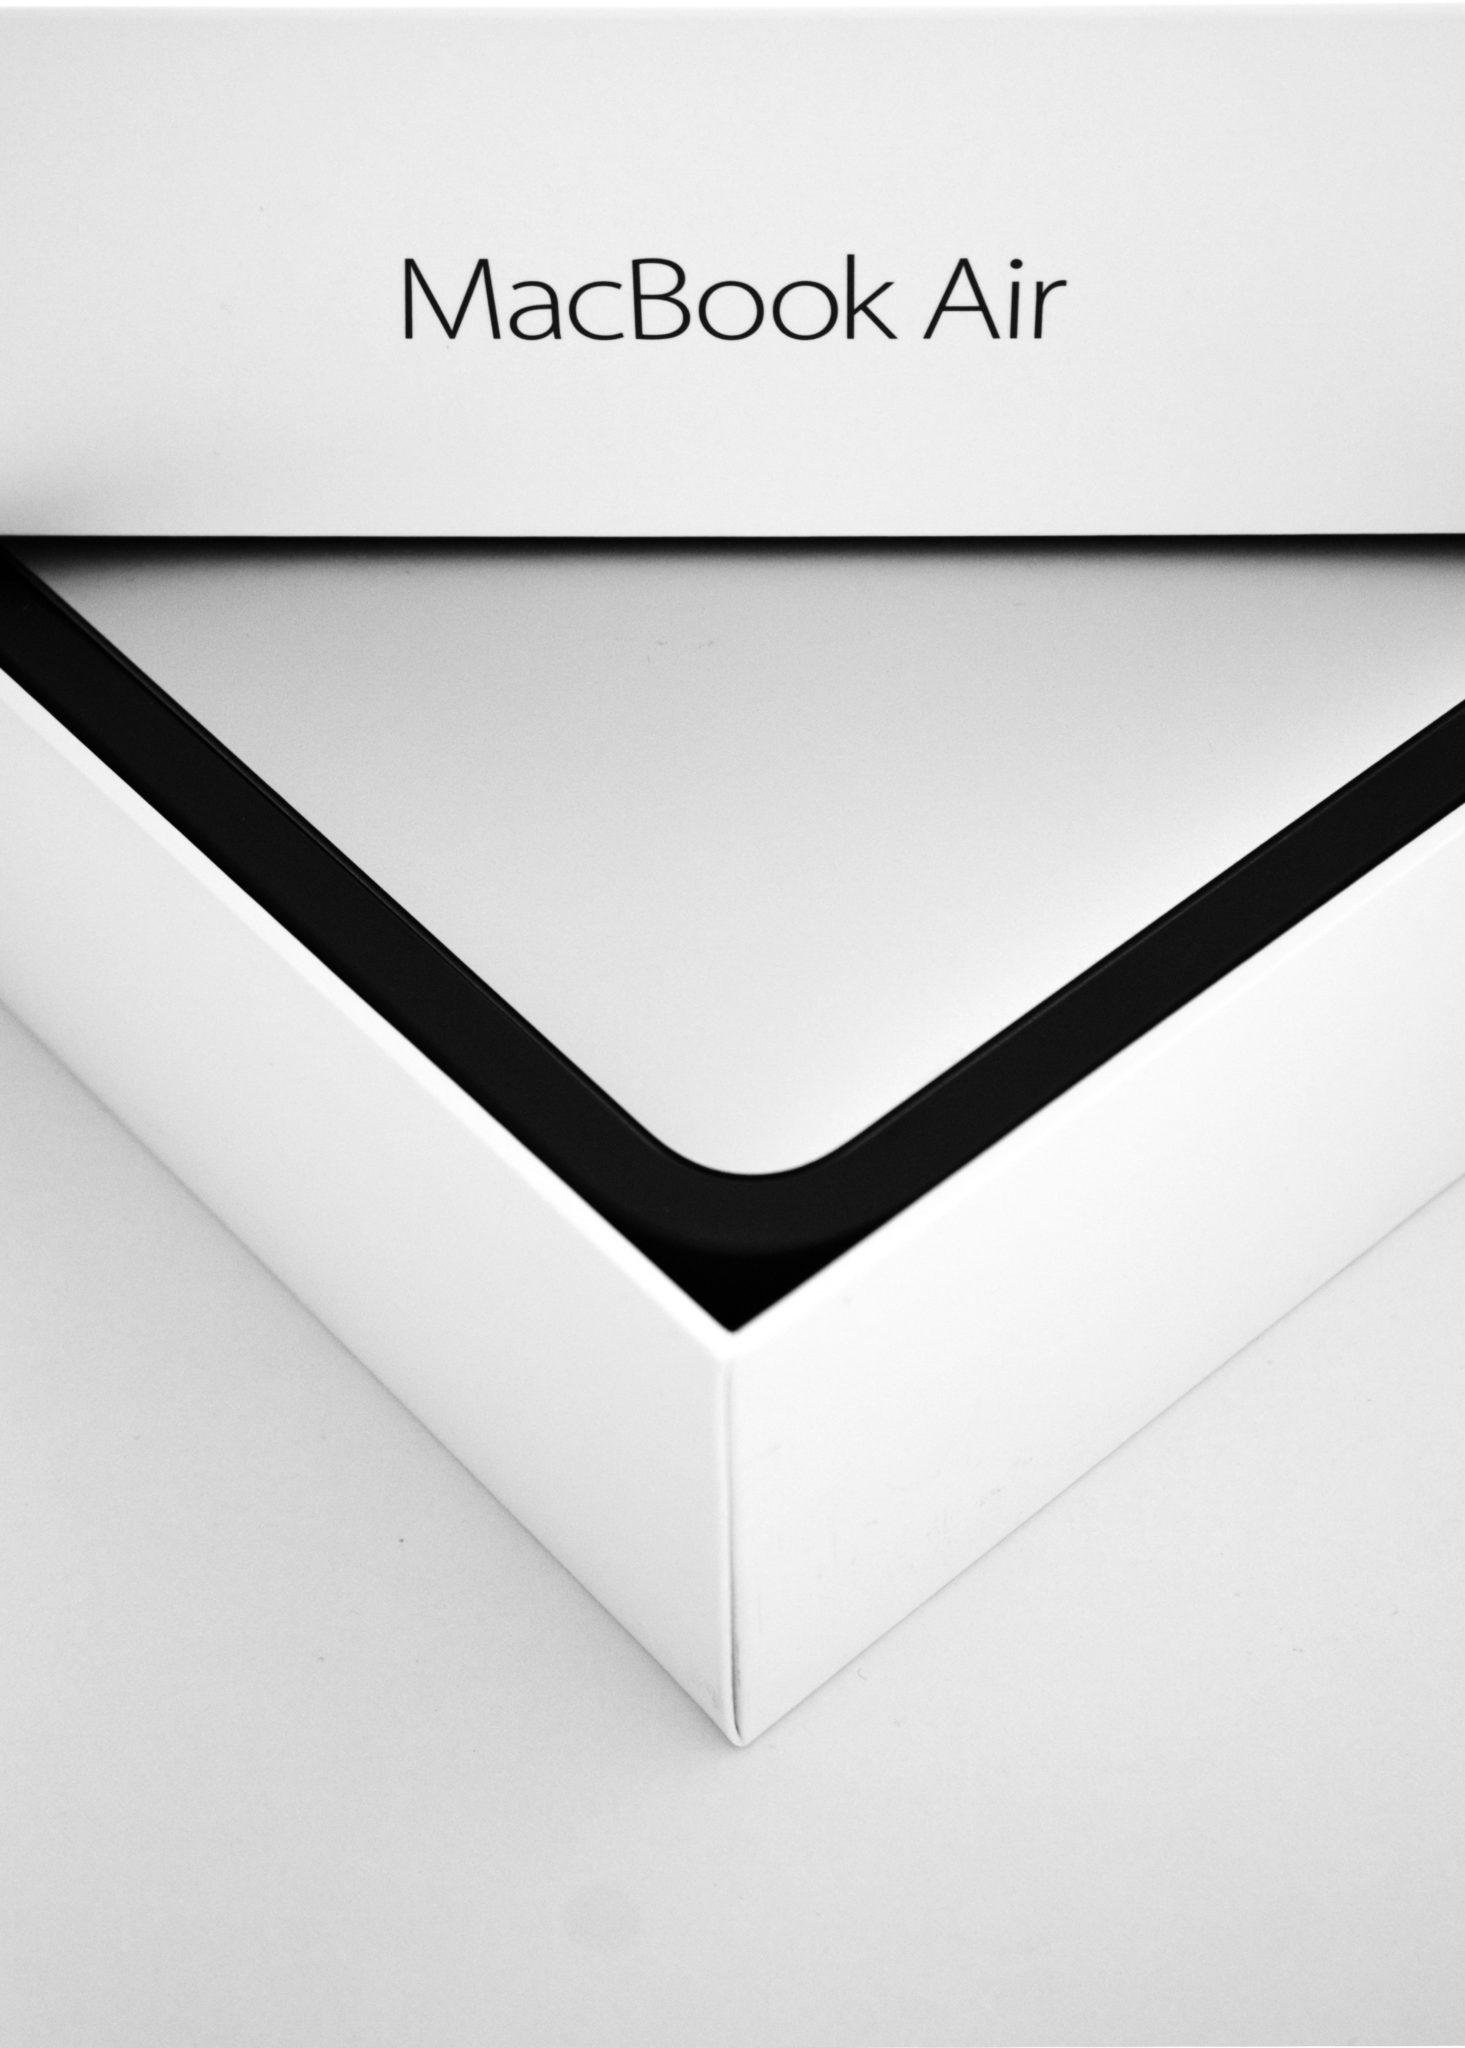 MacBook Air box